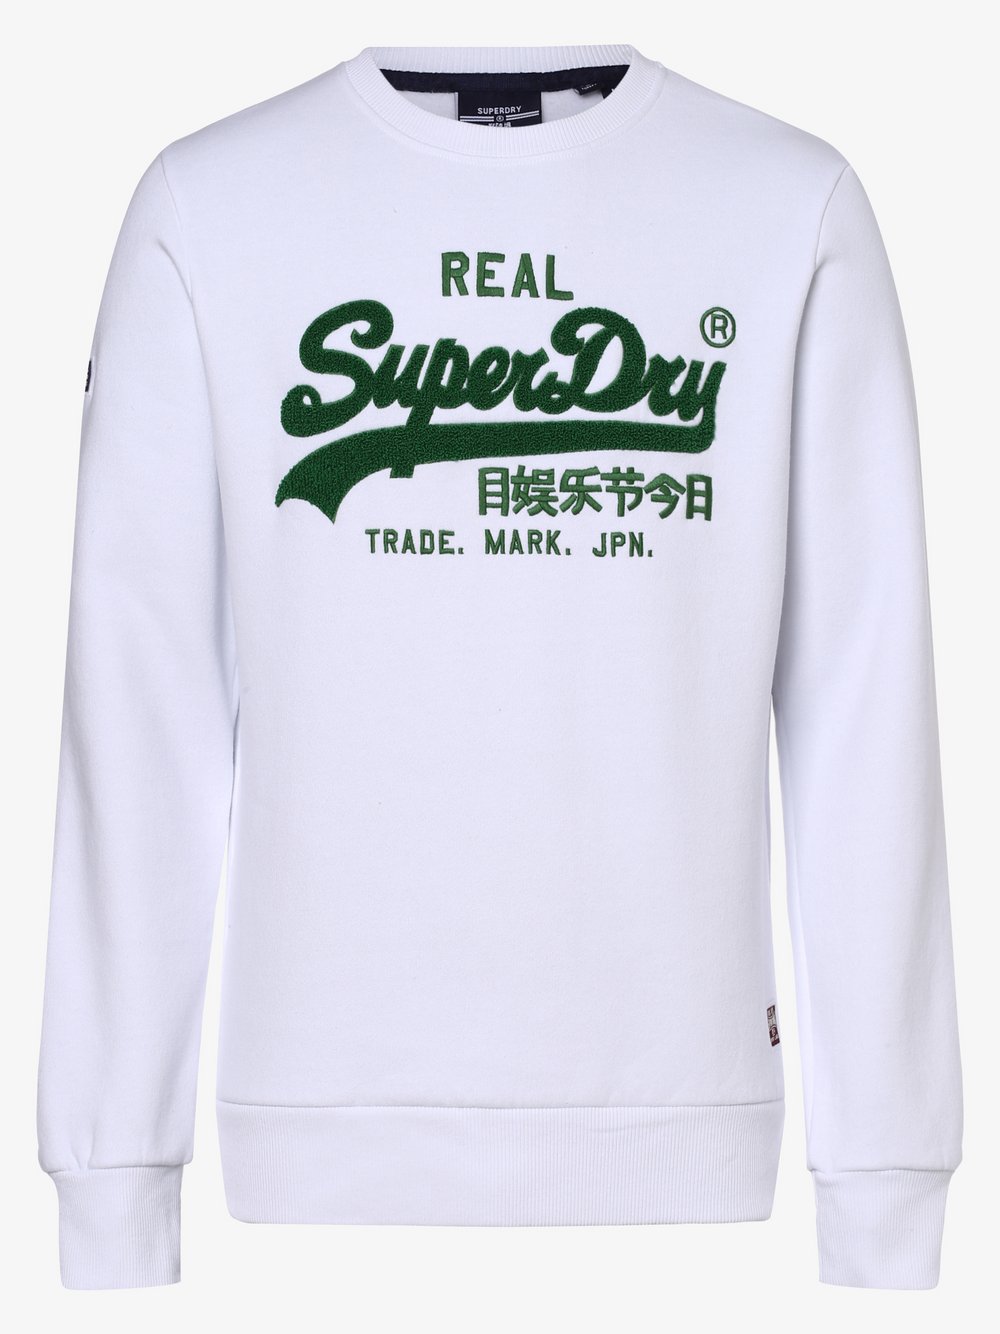 Superdry - Męska bluza nierozpinana, biały